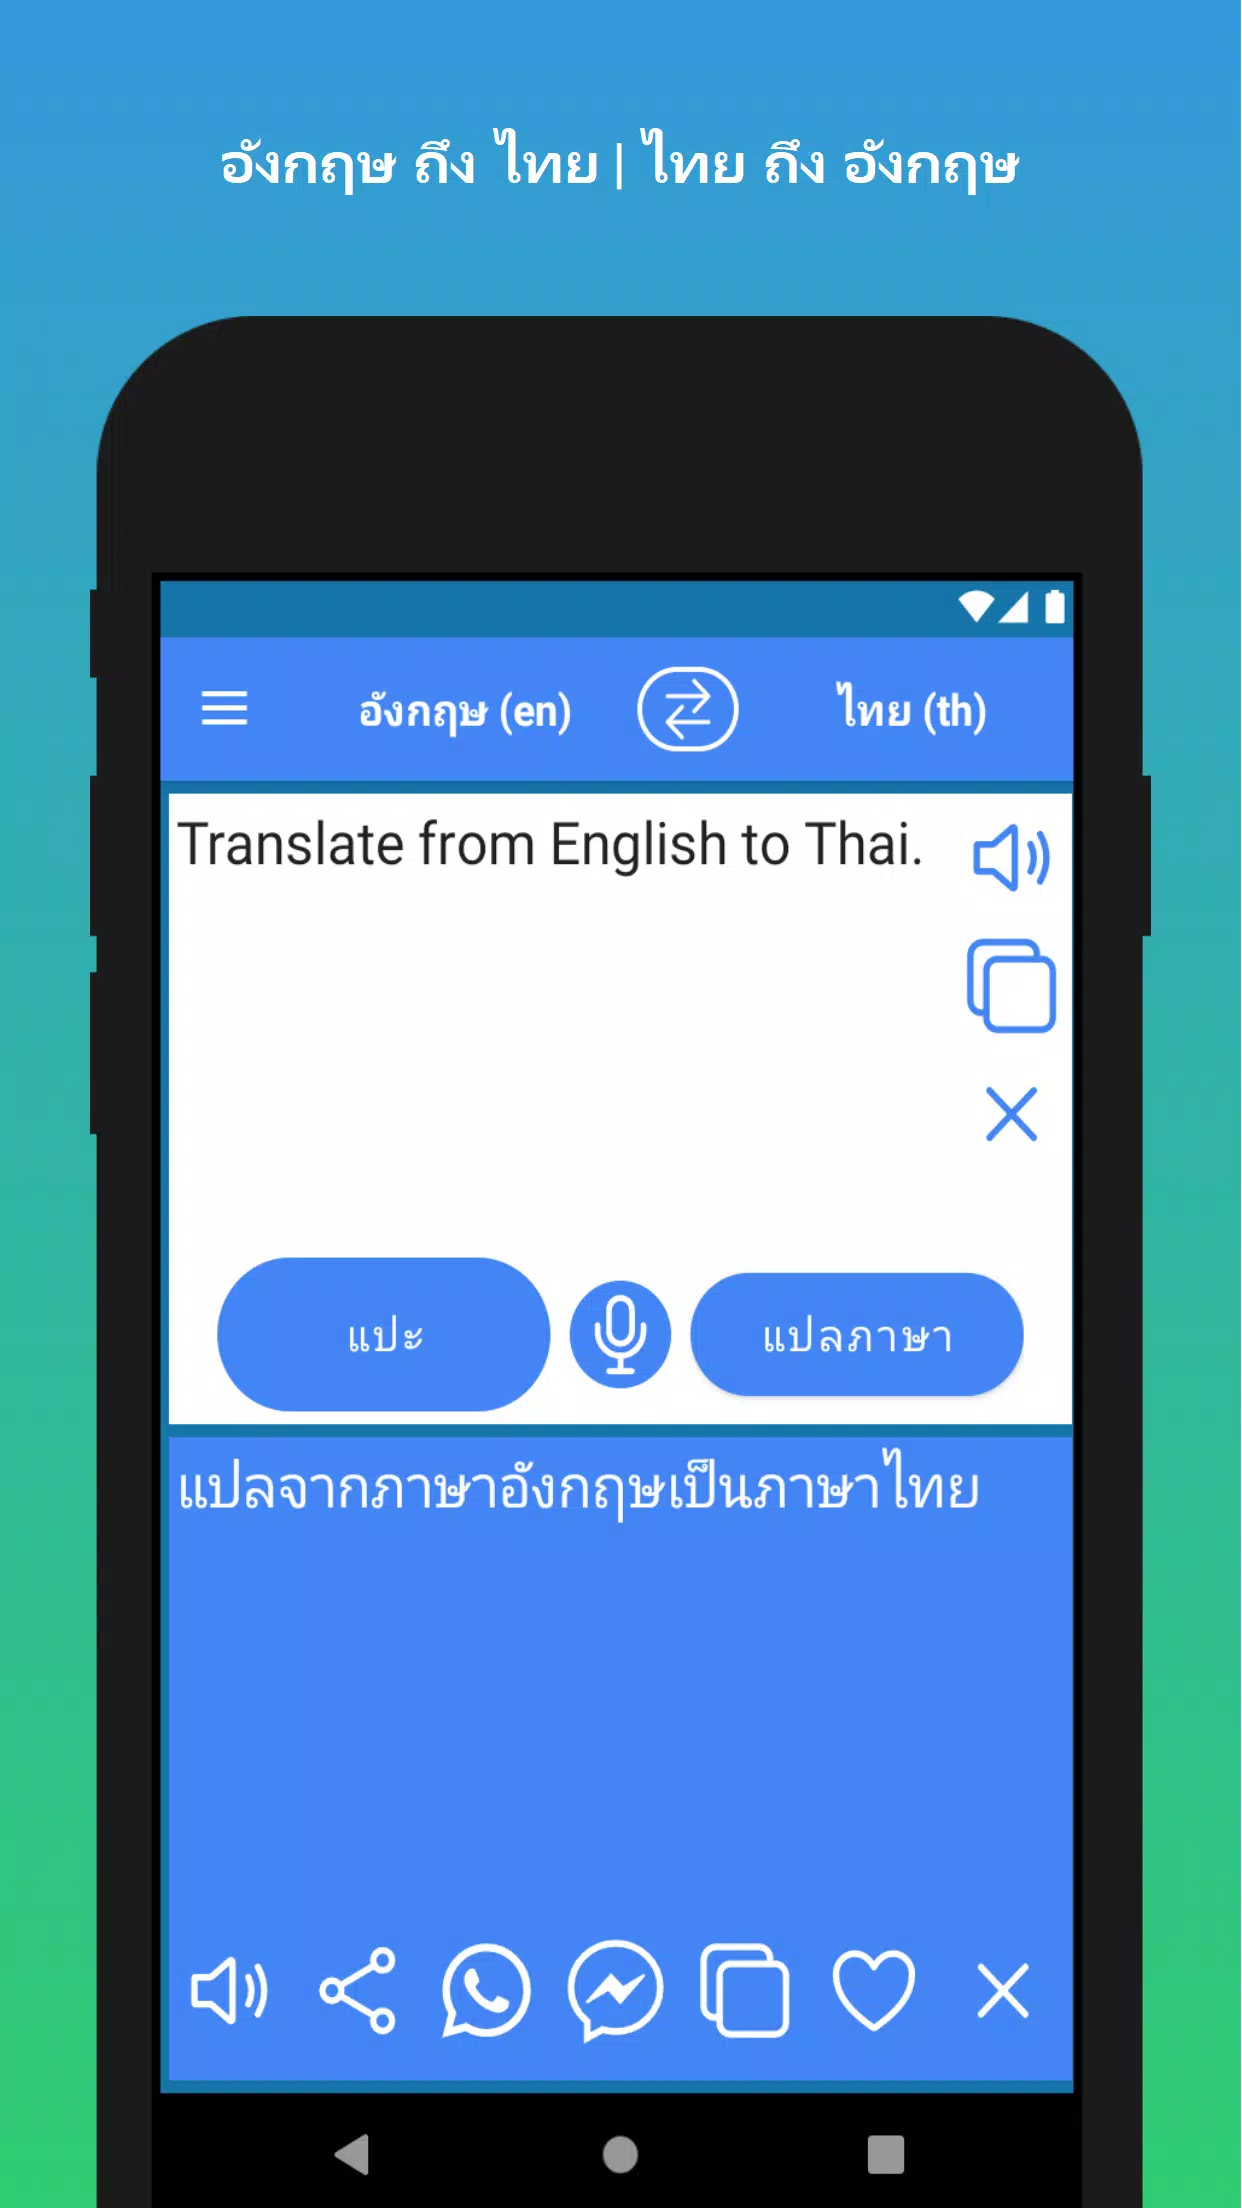 เครื่องแปลภาษาอังกฤษเป็นไทย: สื่อสารไปกับโลกด้วยความเข้าใจทั้งสองภาษา -  Hanoilaw Firm